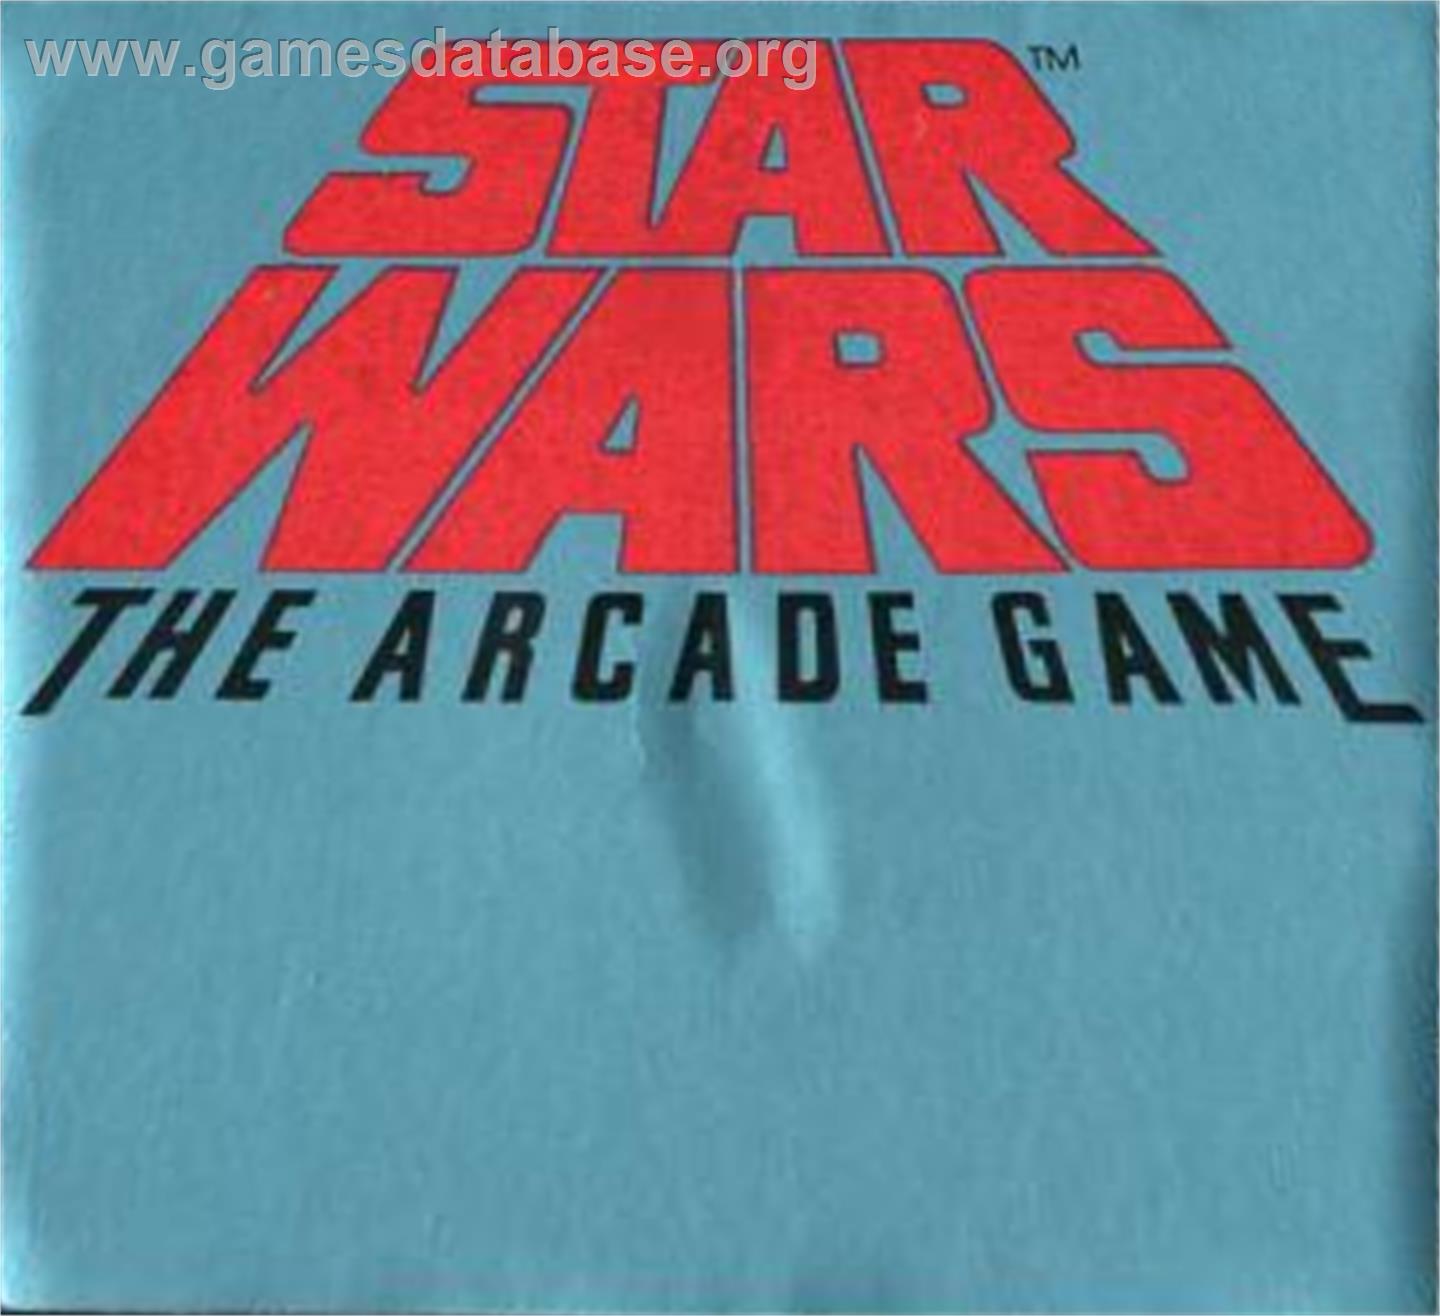 Star Wars Arcade - Atari 5200 - Artwork - Cartridge Top